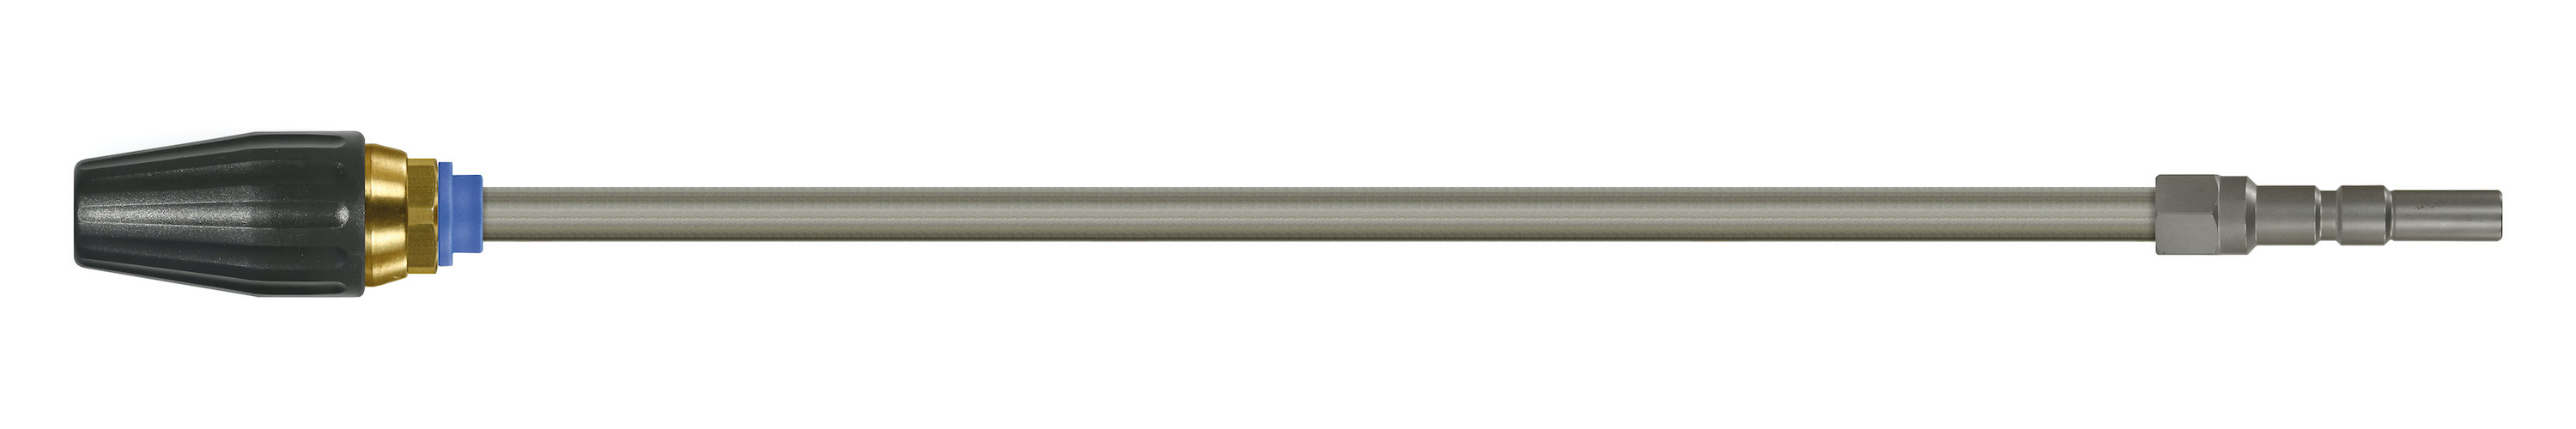 Coupleur KW. Lances tube zingué avec rotabuse ST-357.1. Cône 20°. 100 - 250 bar. Max. 100 °C, Calibre 060.